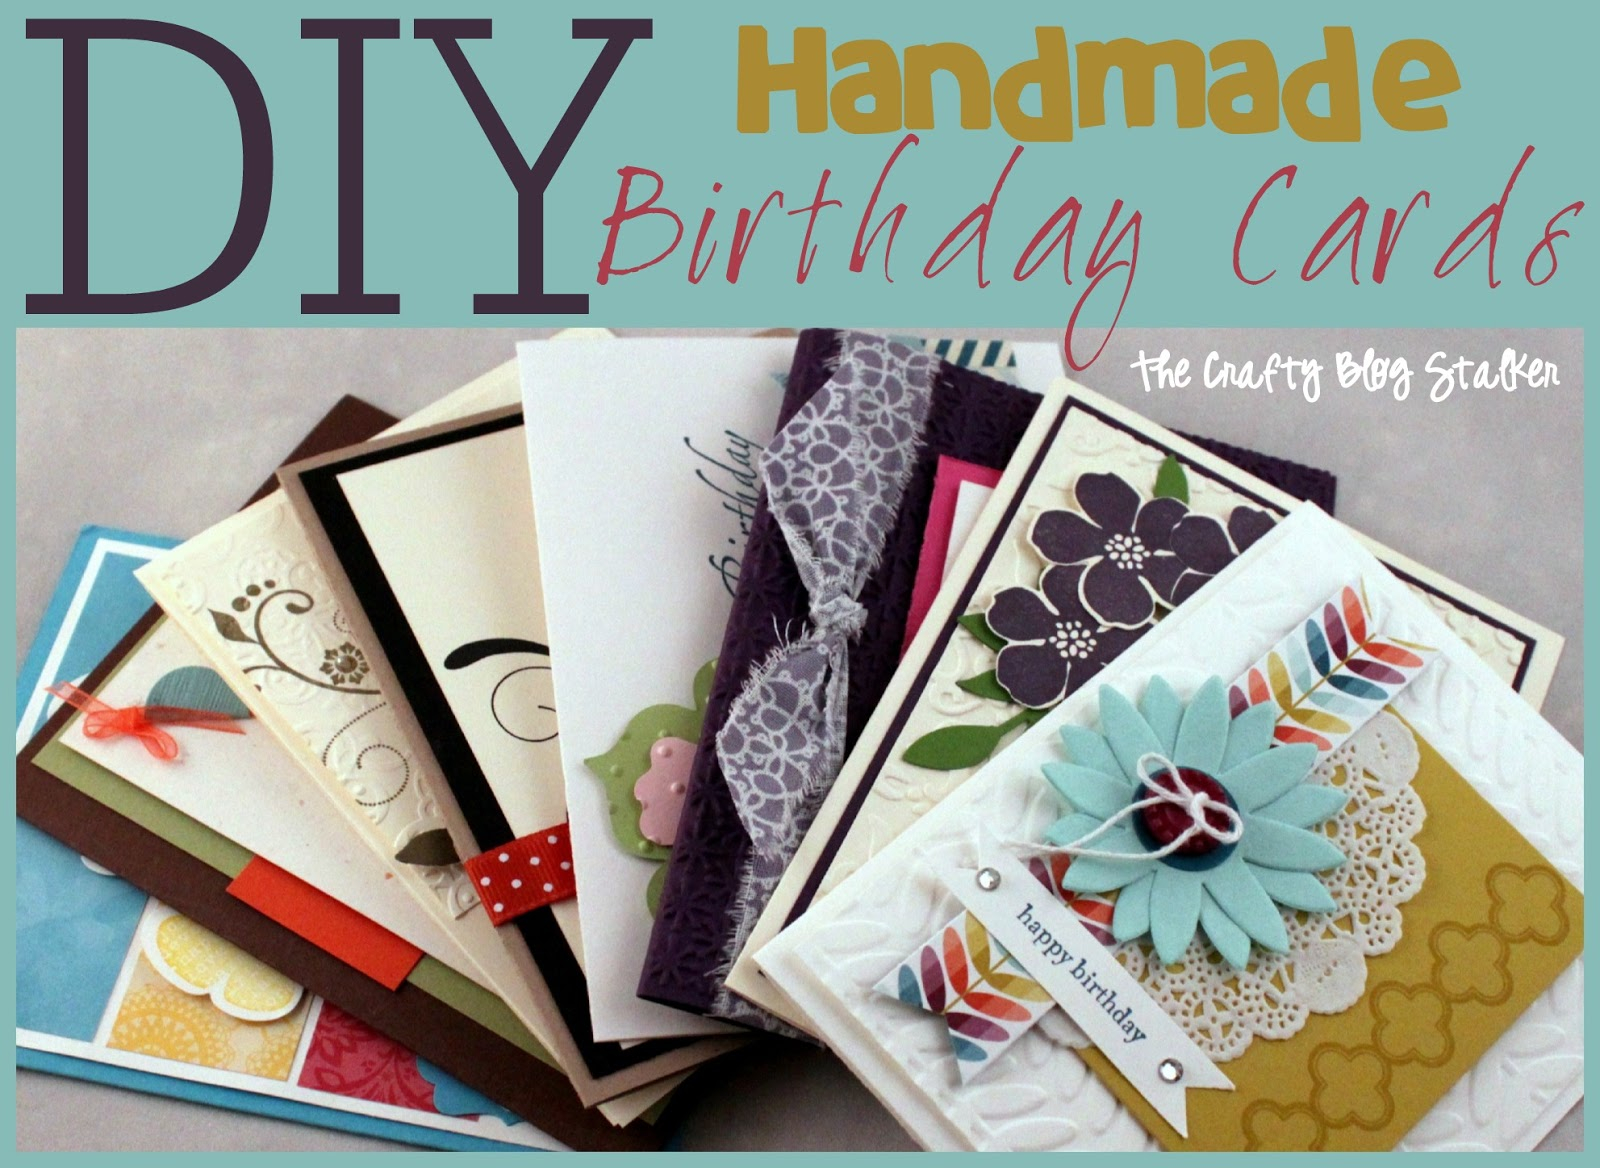 Card Ideas For Birthday Handmade Handmade Birthday Card Ideas The Crafty Blog Stalker